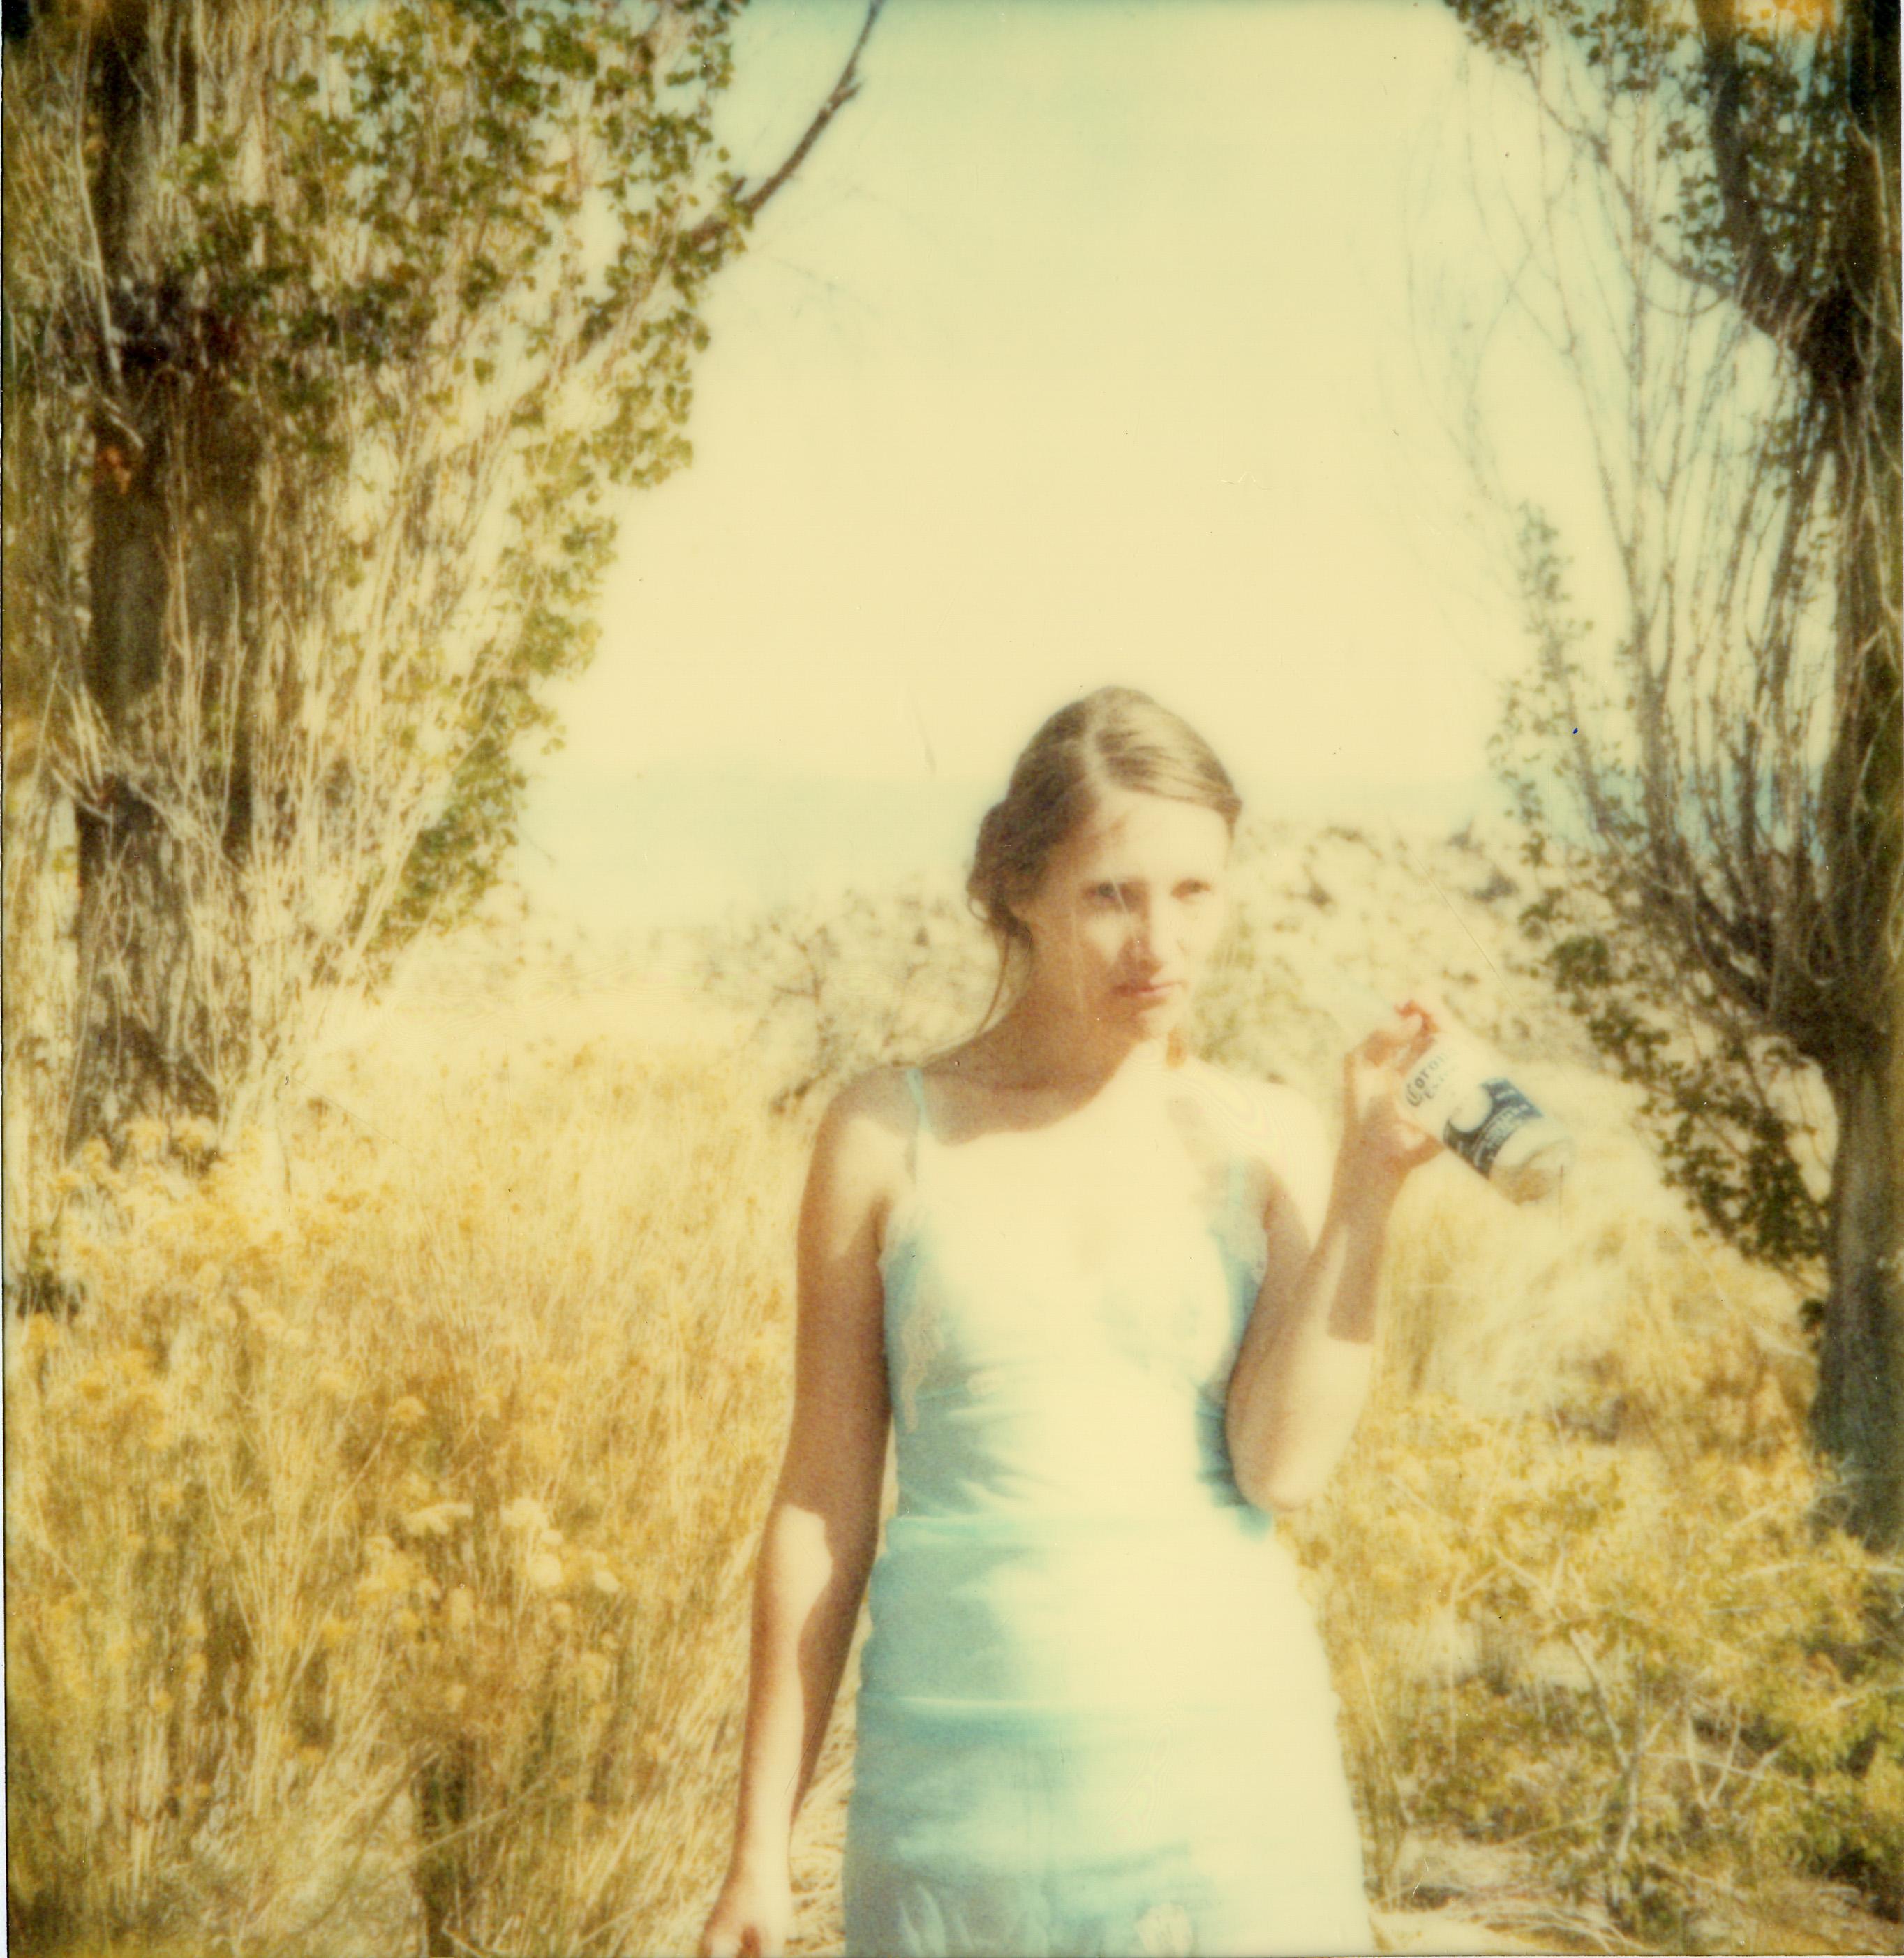 Stefanie Schneider Portrait Photograph - Unbound (Wastelands) Contemporary, 21st Century, Polaroid, Portrait, Photograph